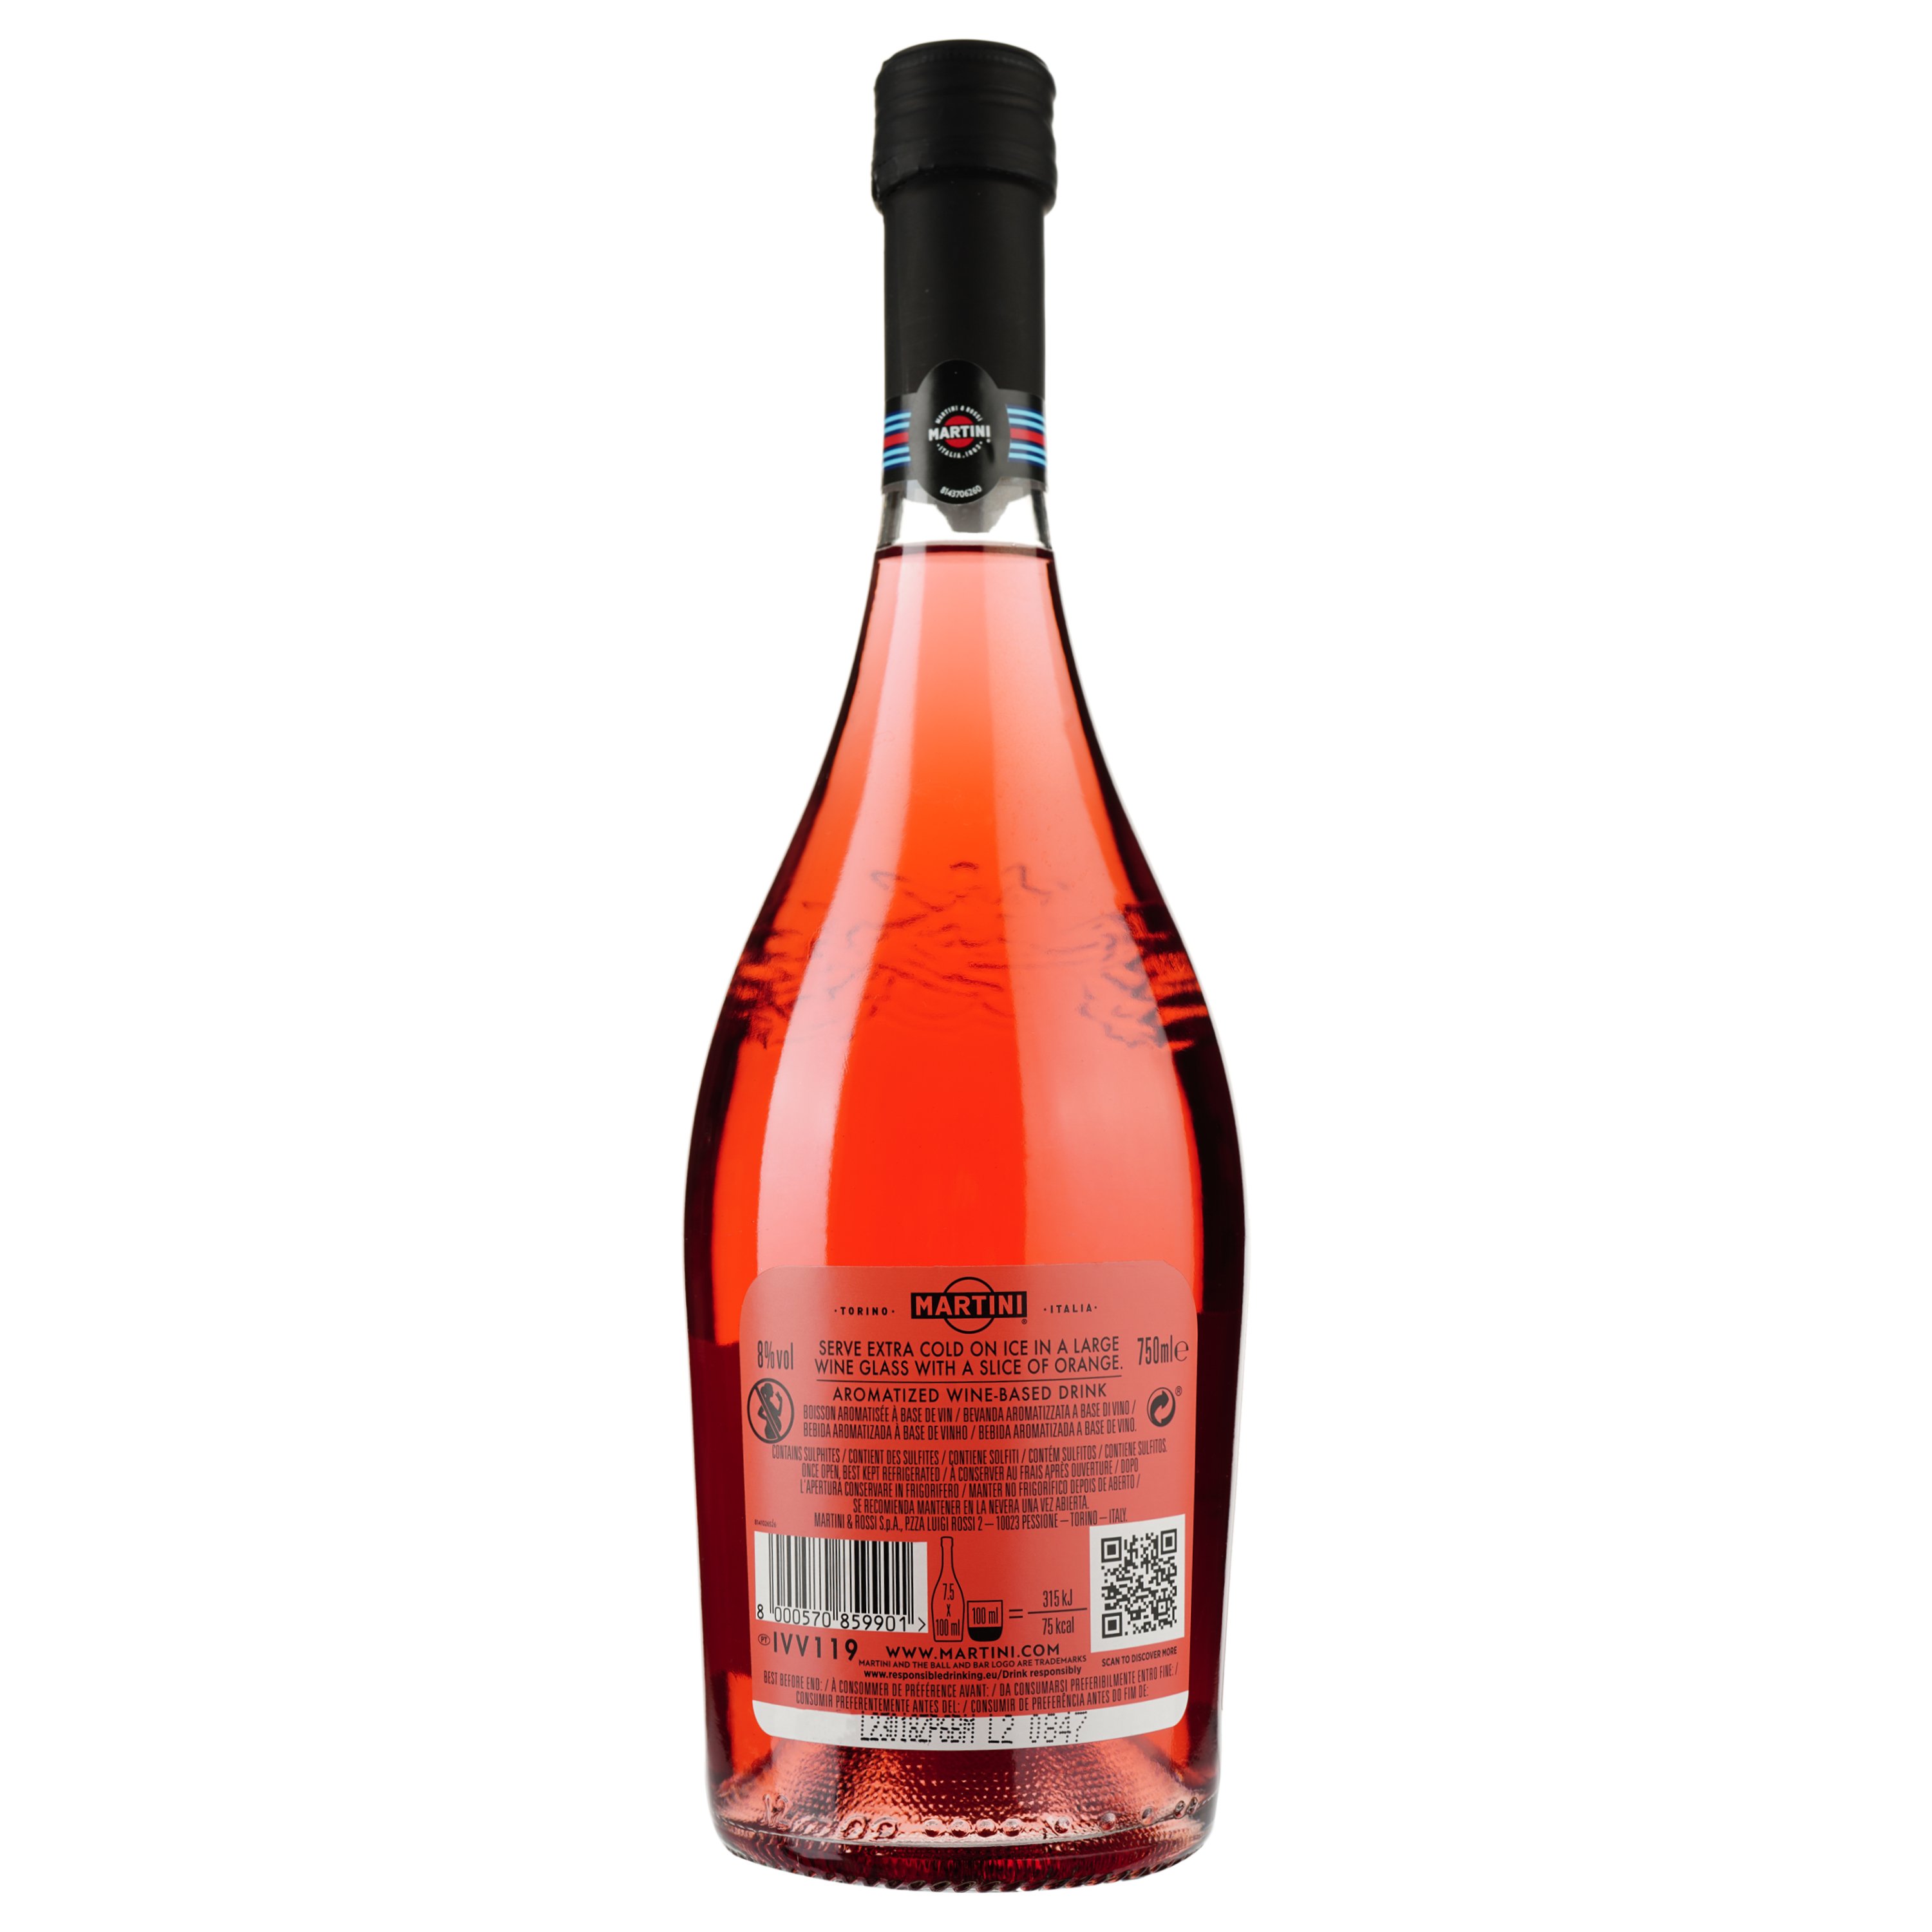 Напиток Martini Spritz Rosato, розовый, полусладкий, 8%, 0,75 л - фото 2